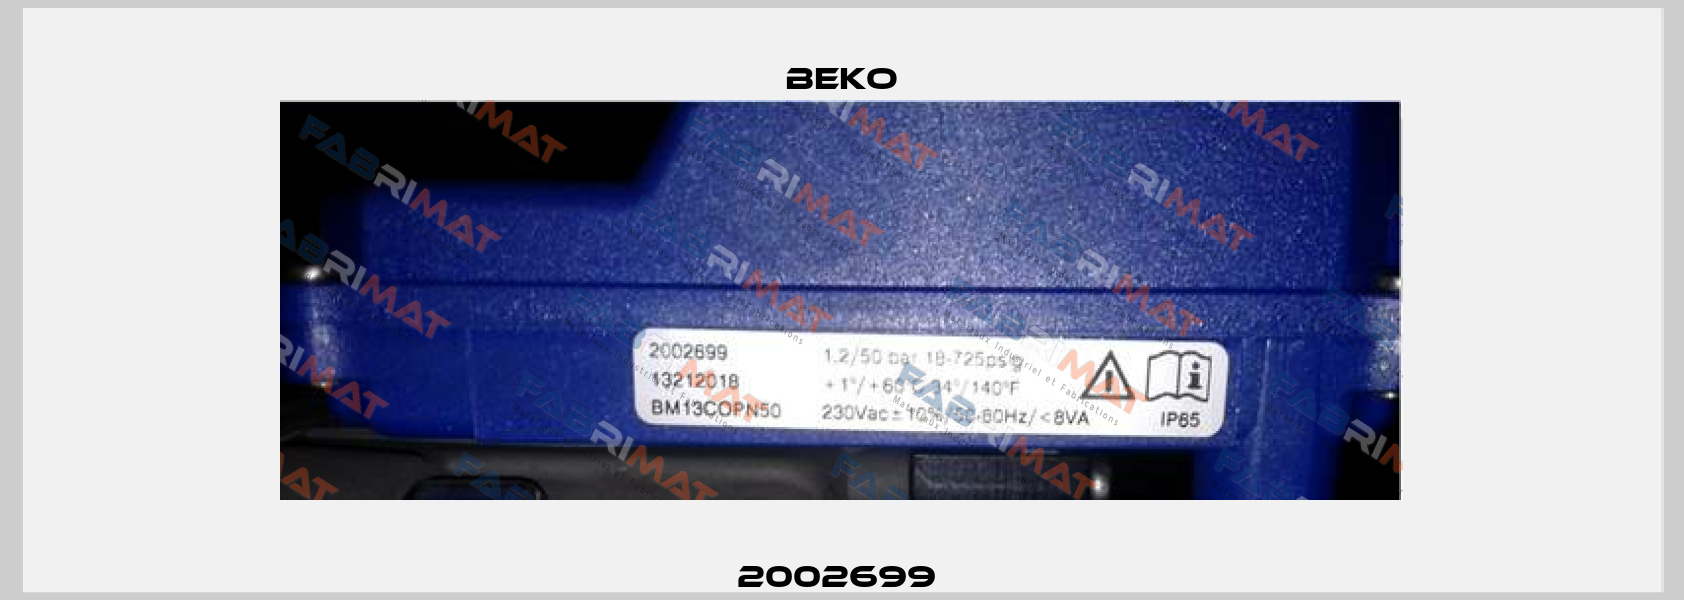 2002699  Beko